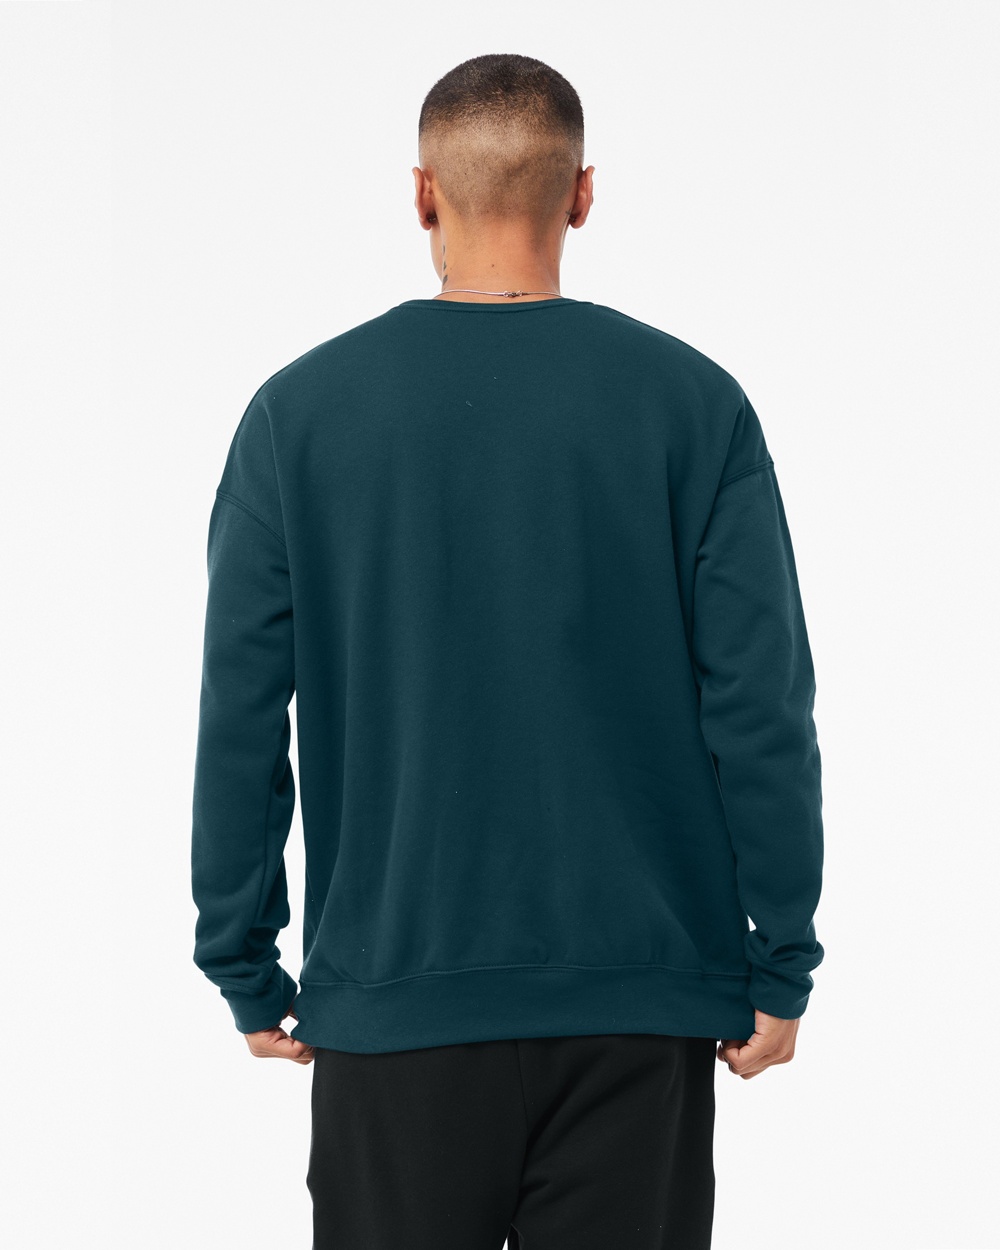 CV360 - Unisex Sponge Fleece Drop Shoulder Sweatshirt - One Stop